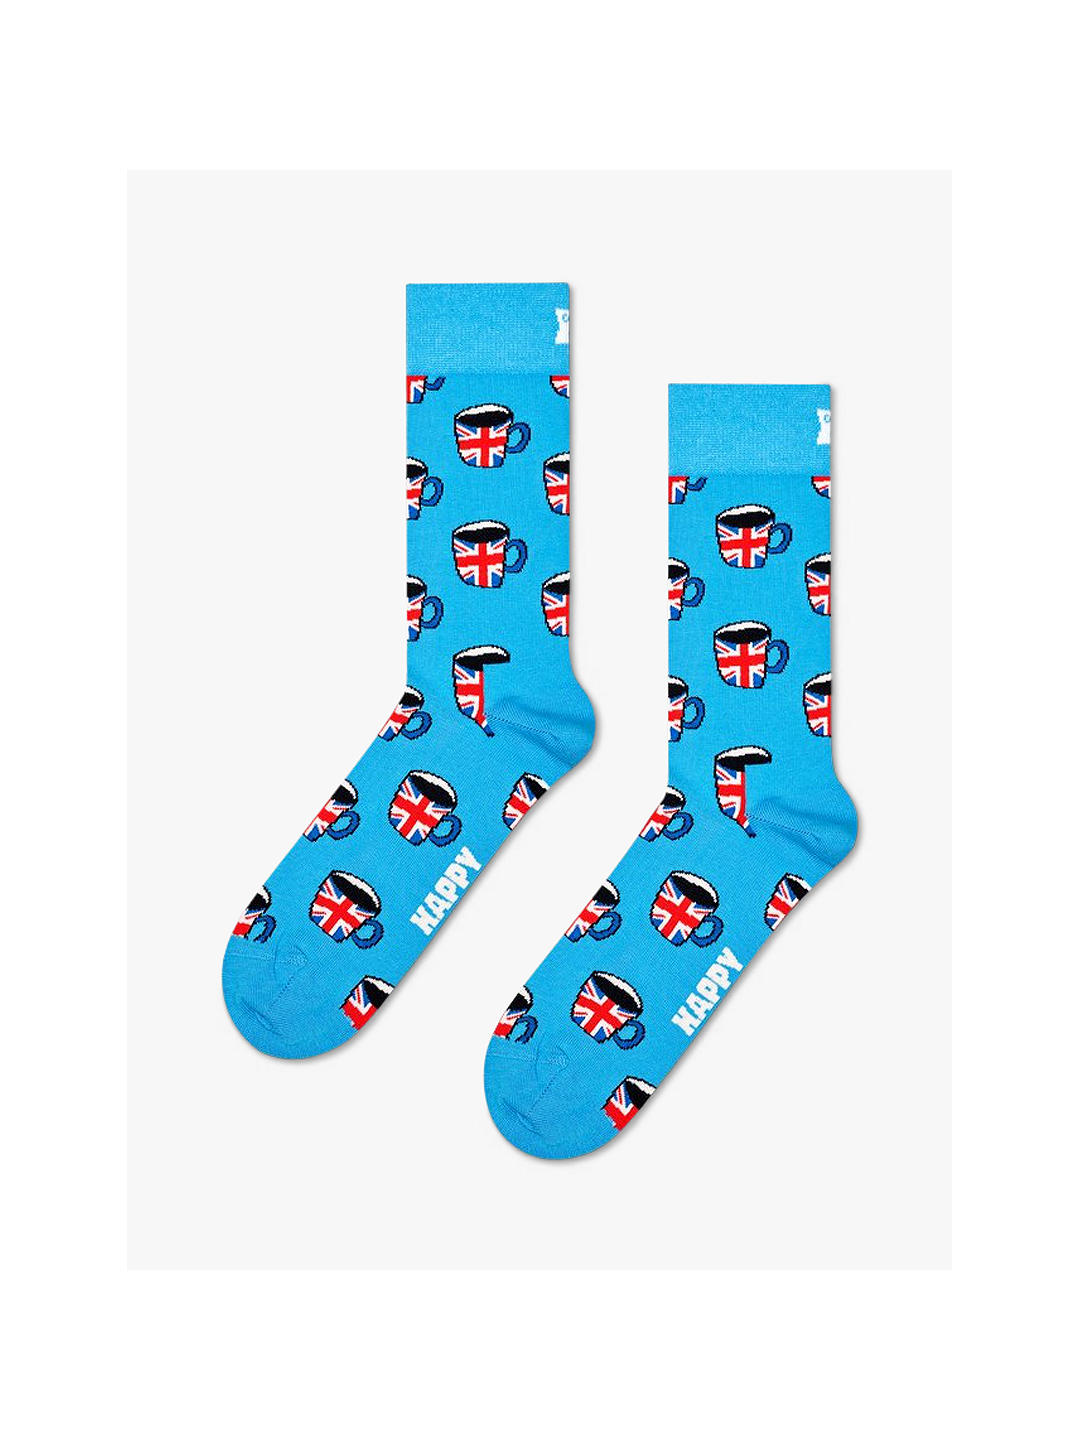 Happy Socks British Tea Socks, Blue/Multi